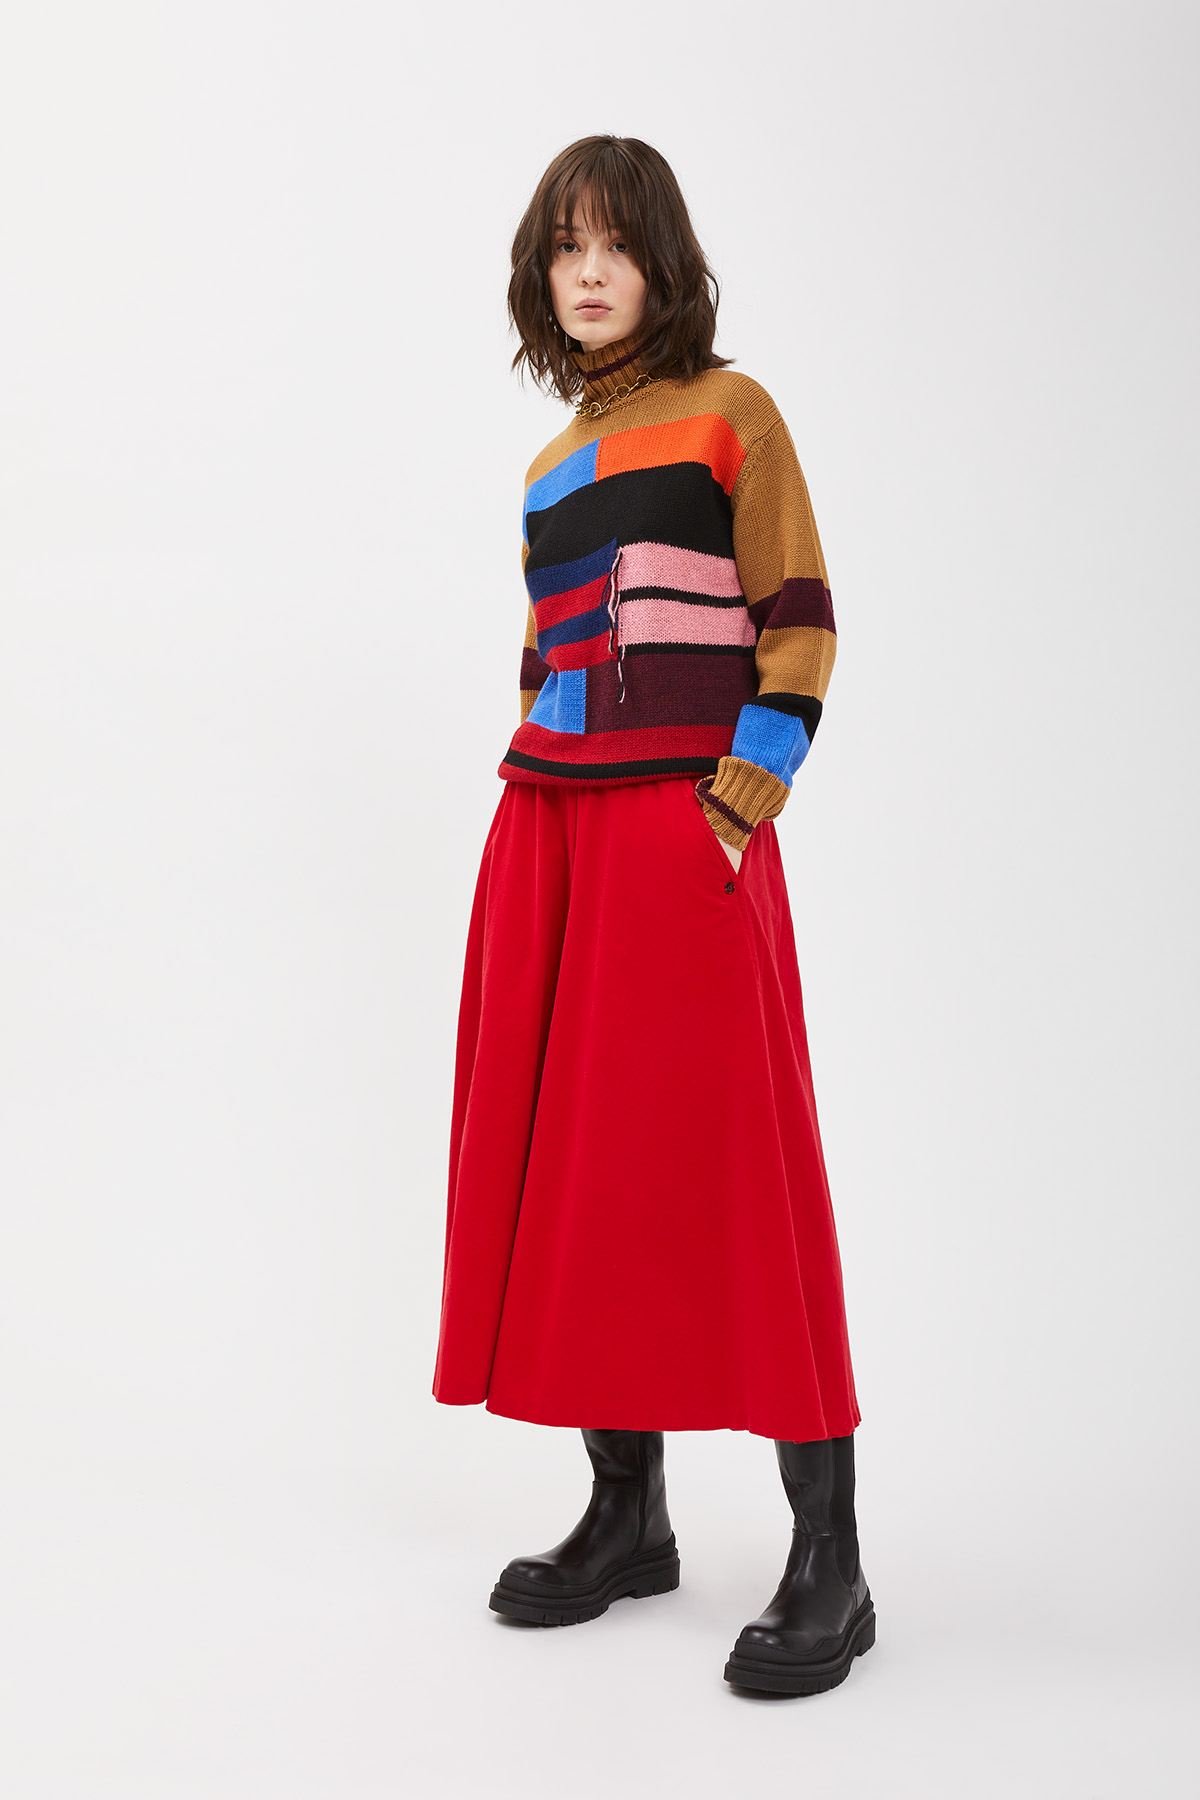 Wool-blend jumper